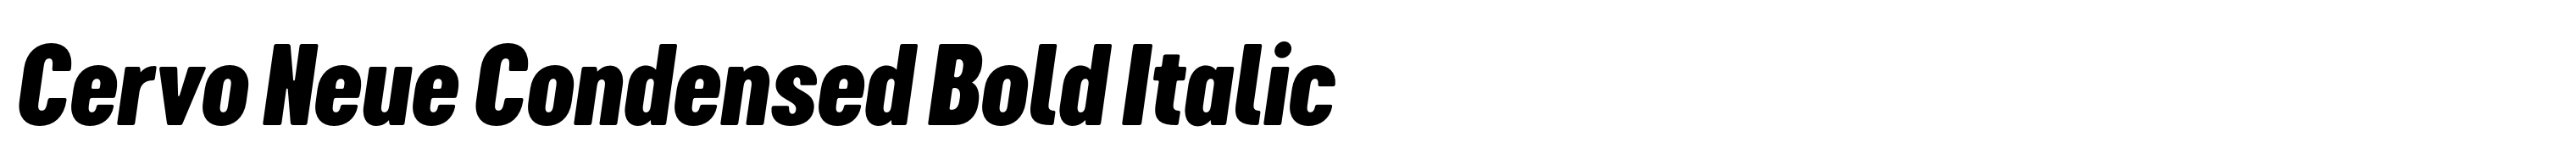 Cervo Neue Condensed Bold Italic